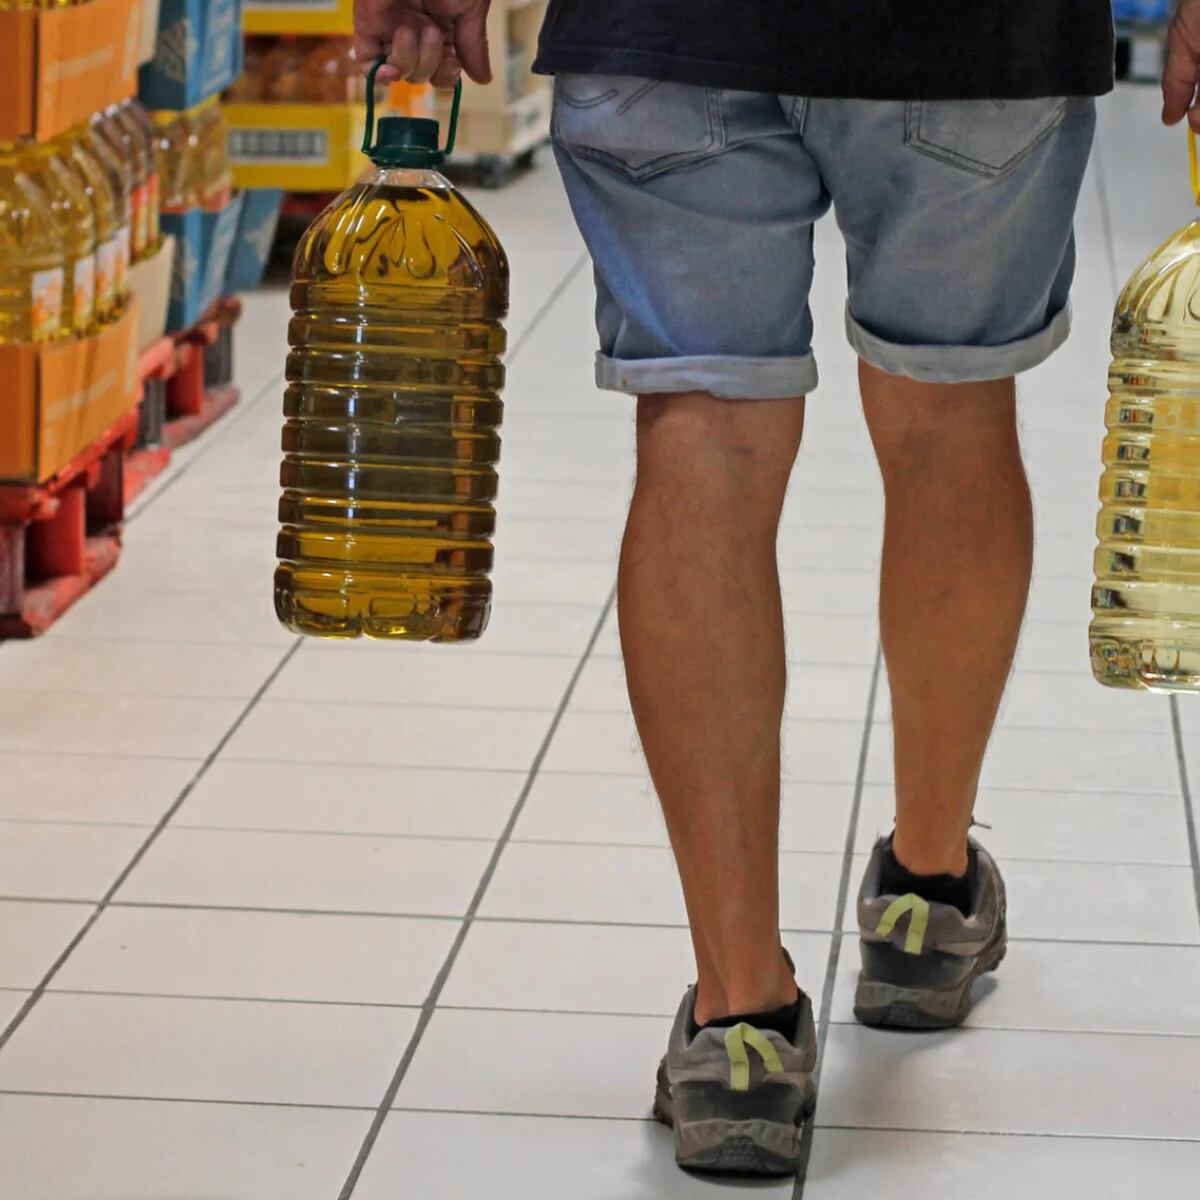 El Corte Inglés vende en Portugal su garrafa de aceite de oliva 14 euros  más barata que en España, según Facua